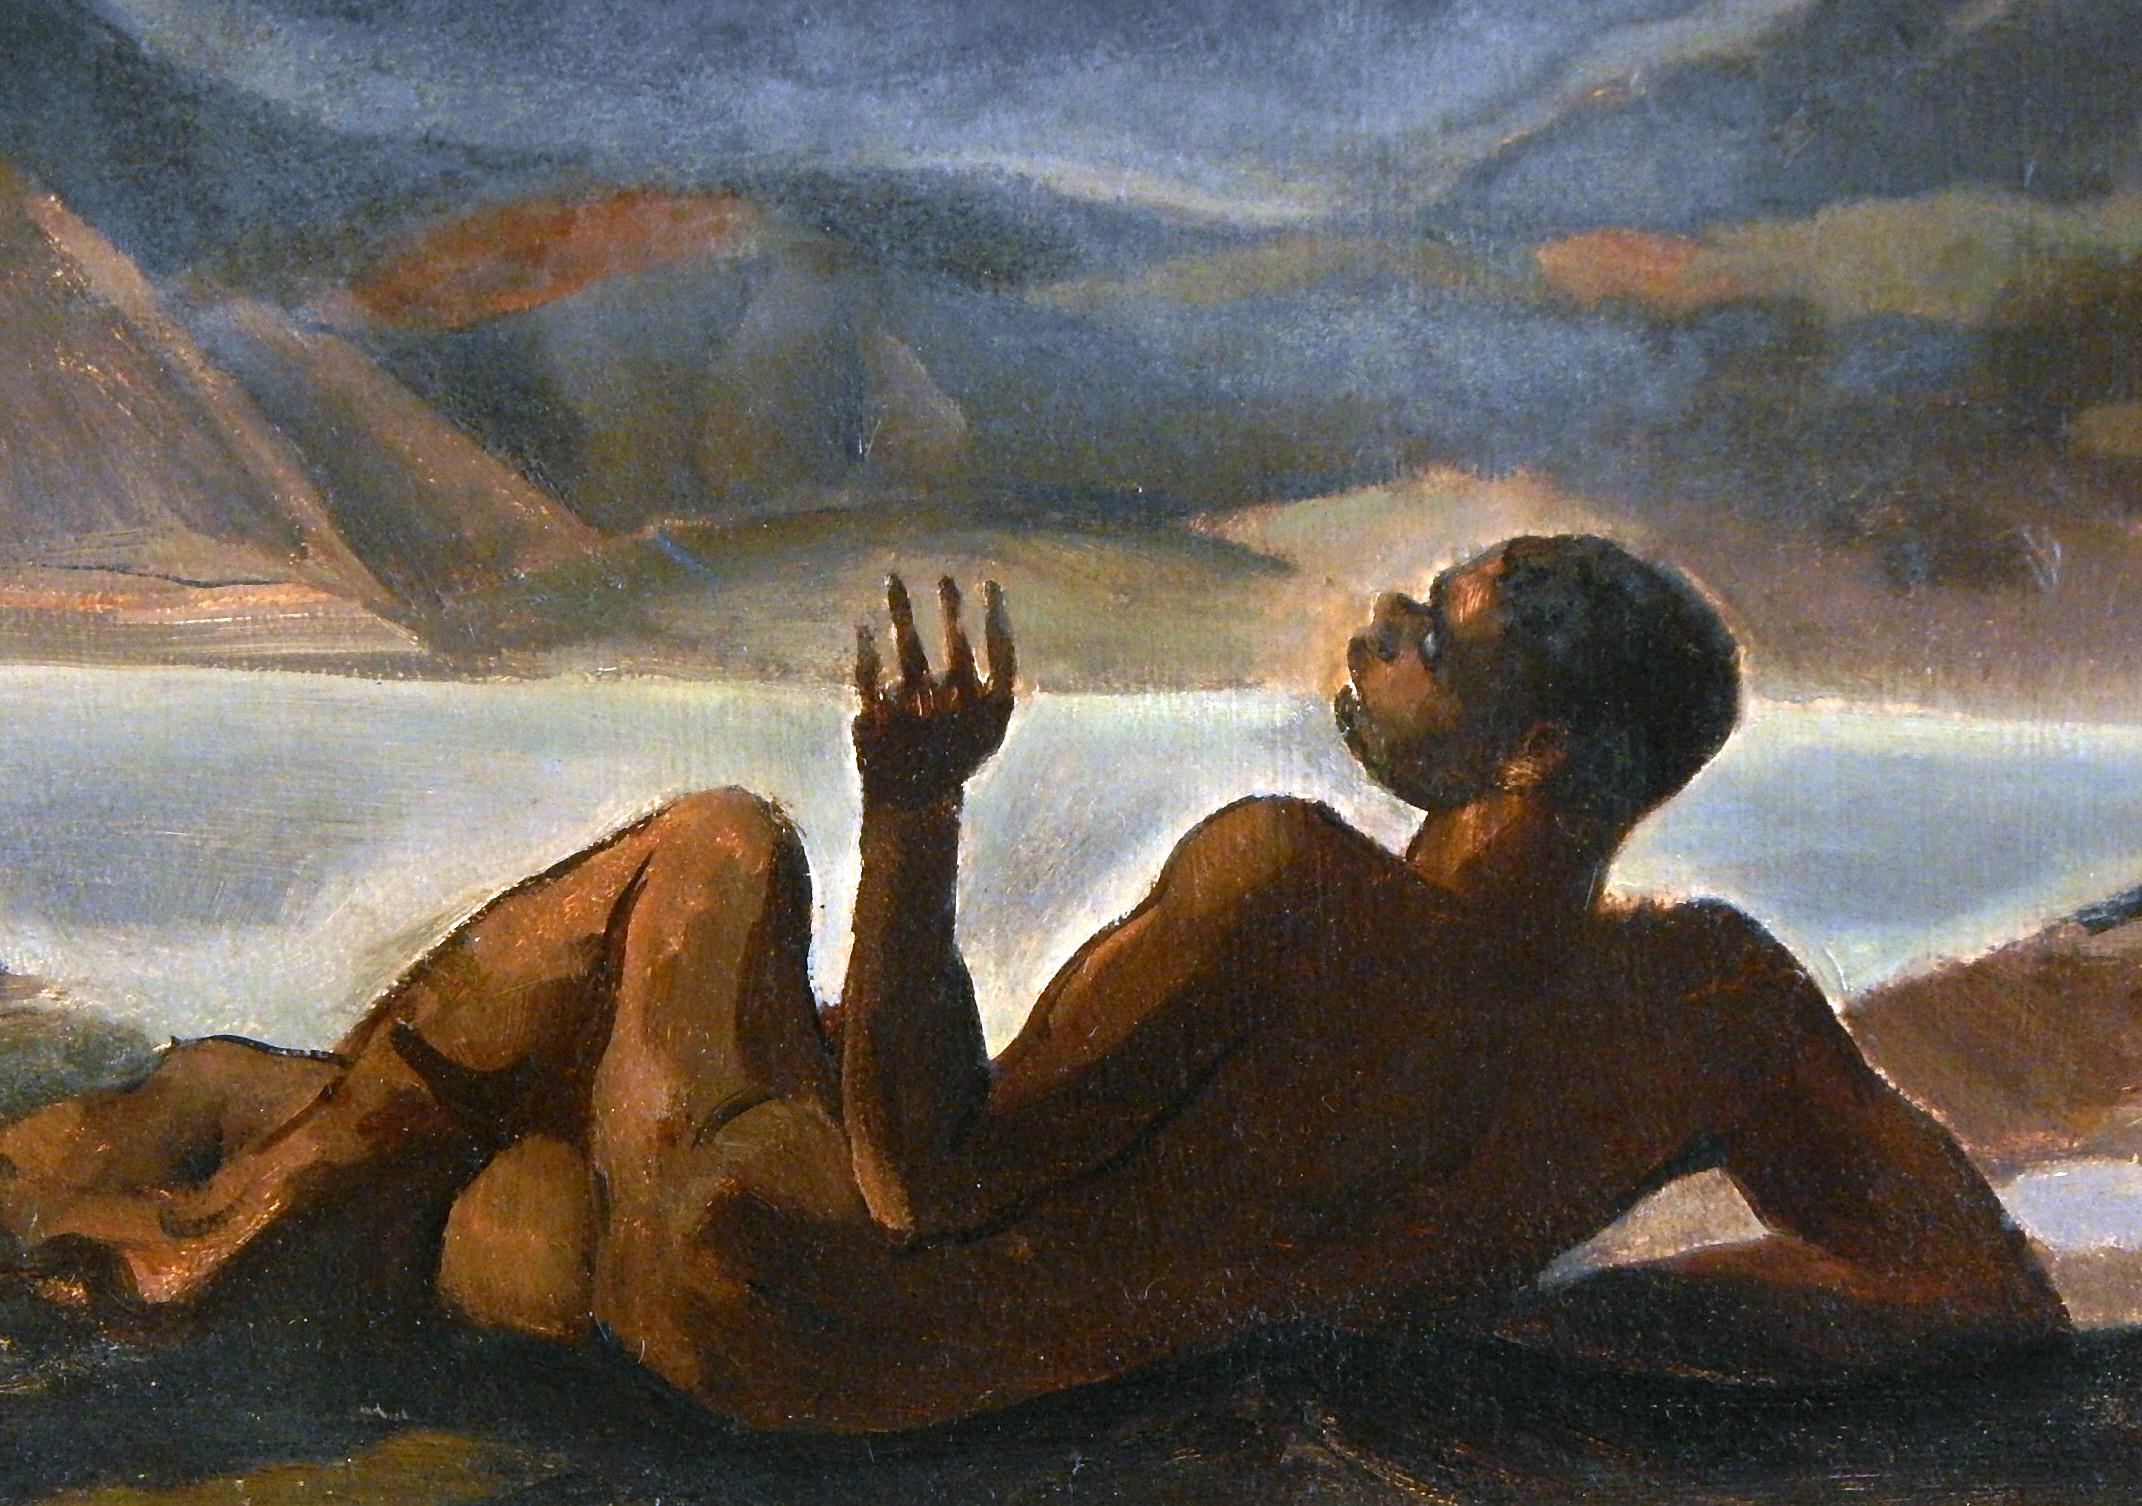 Bien qu'elle ne soit pas signée, cette brillante scène d'un homme noir nu, s'émerveillant d'une vision d'anges dans le ciel depuis sa position sur le sol en contrebas, rappelle les premières œuvres d'artistes afro-américains tels que Robert Neal,